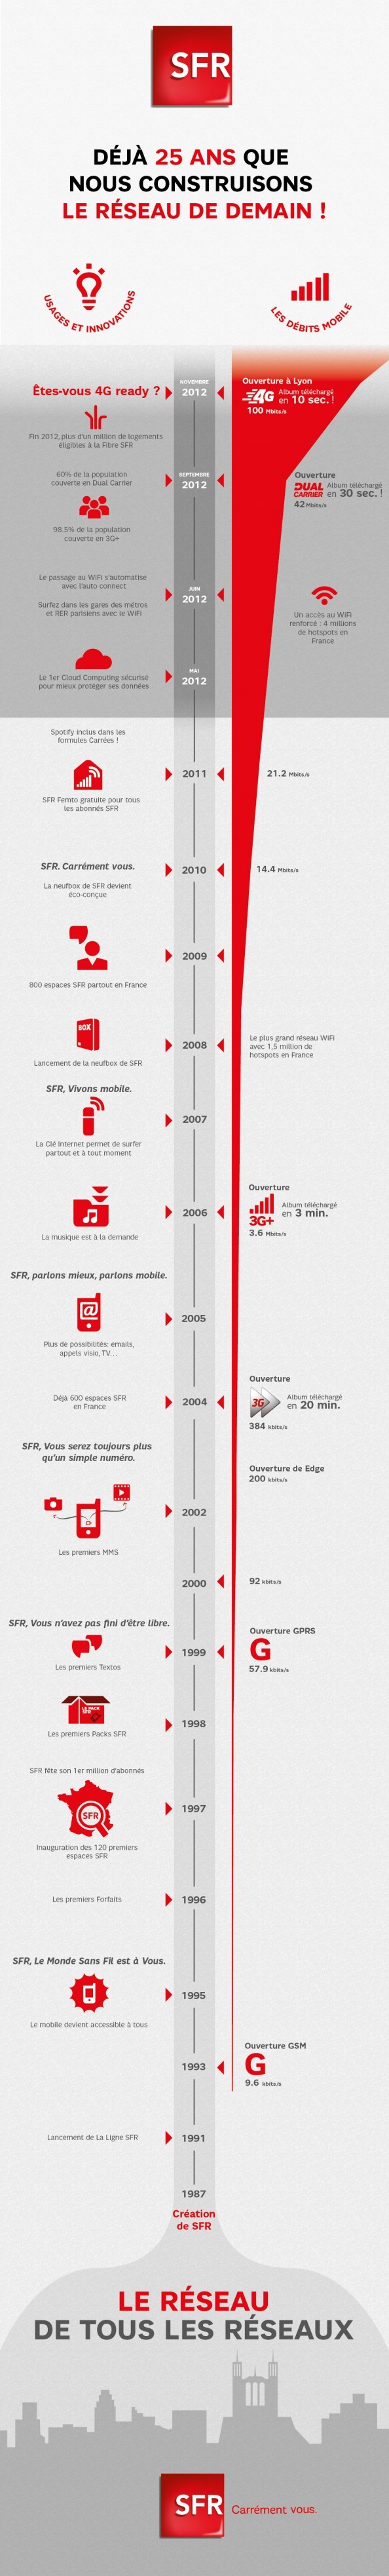 SFR célèbre les 25 ans de son réseau